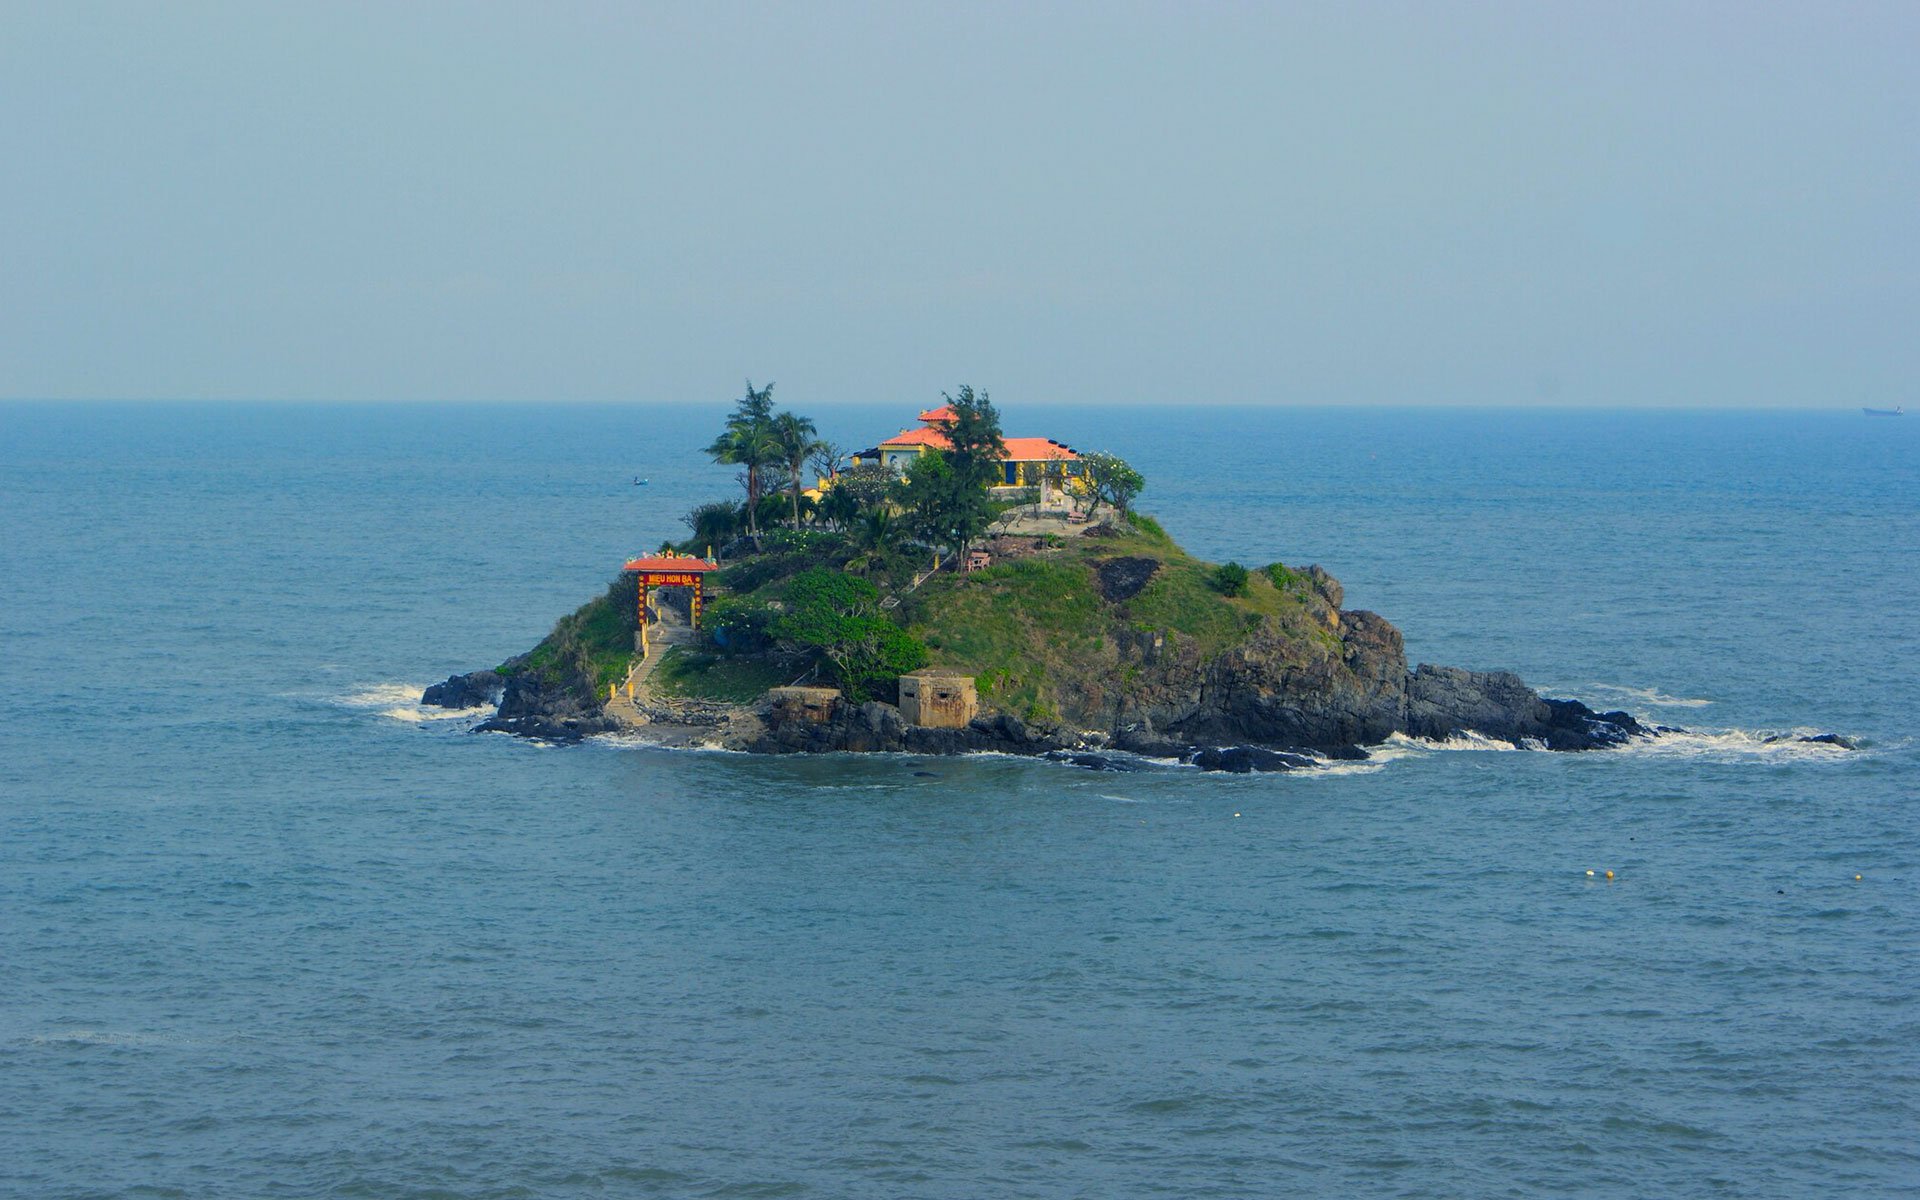 Hon Ba island